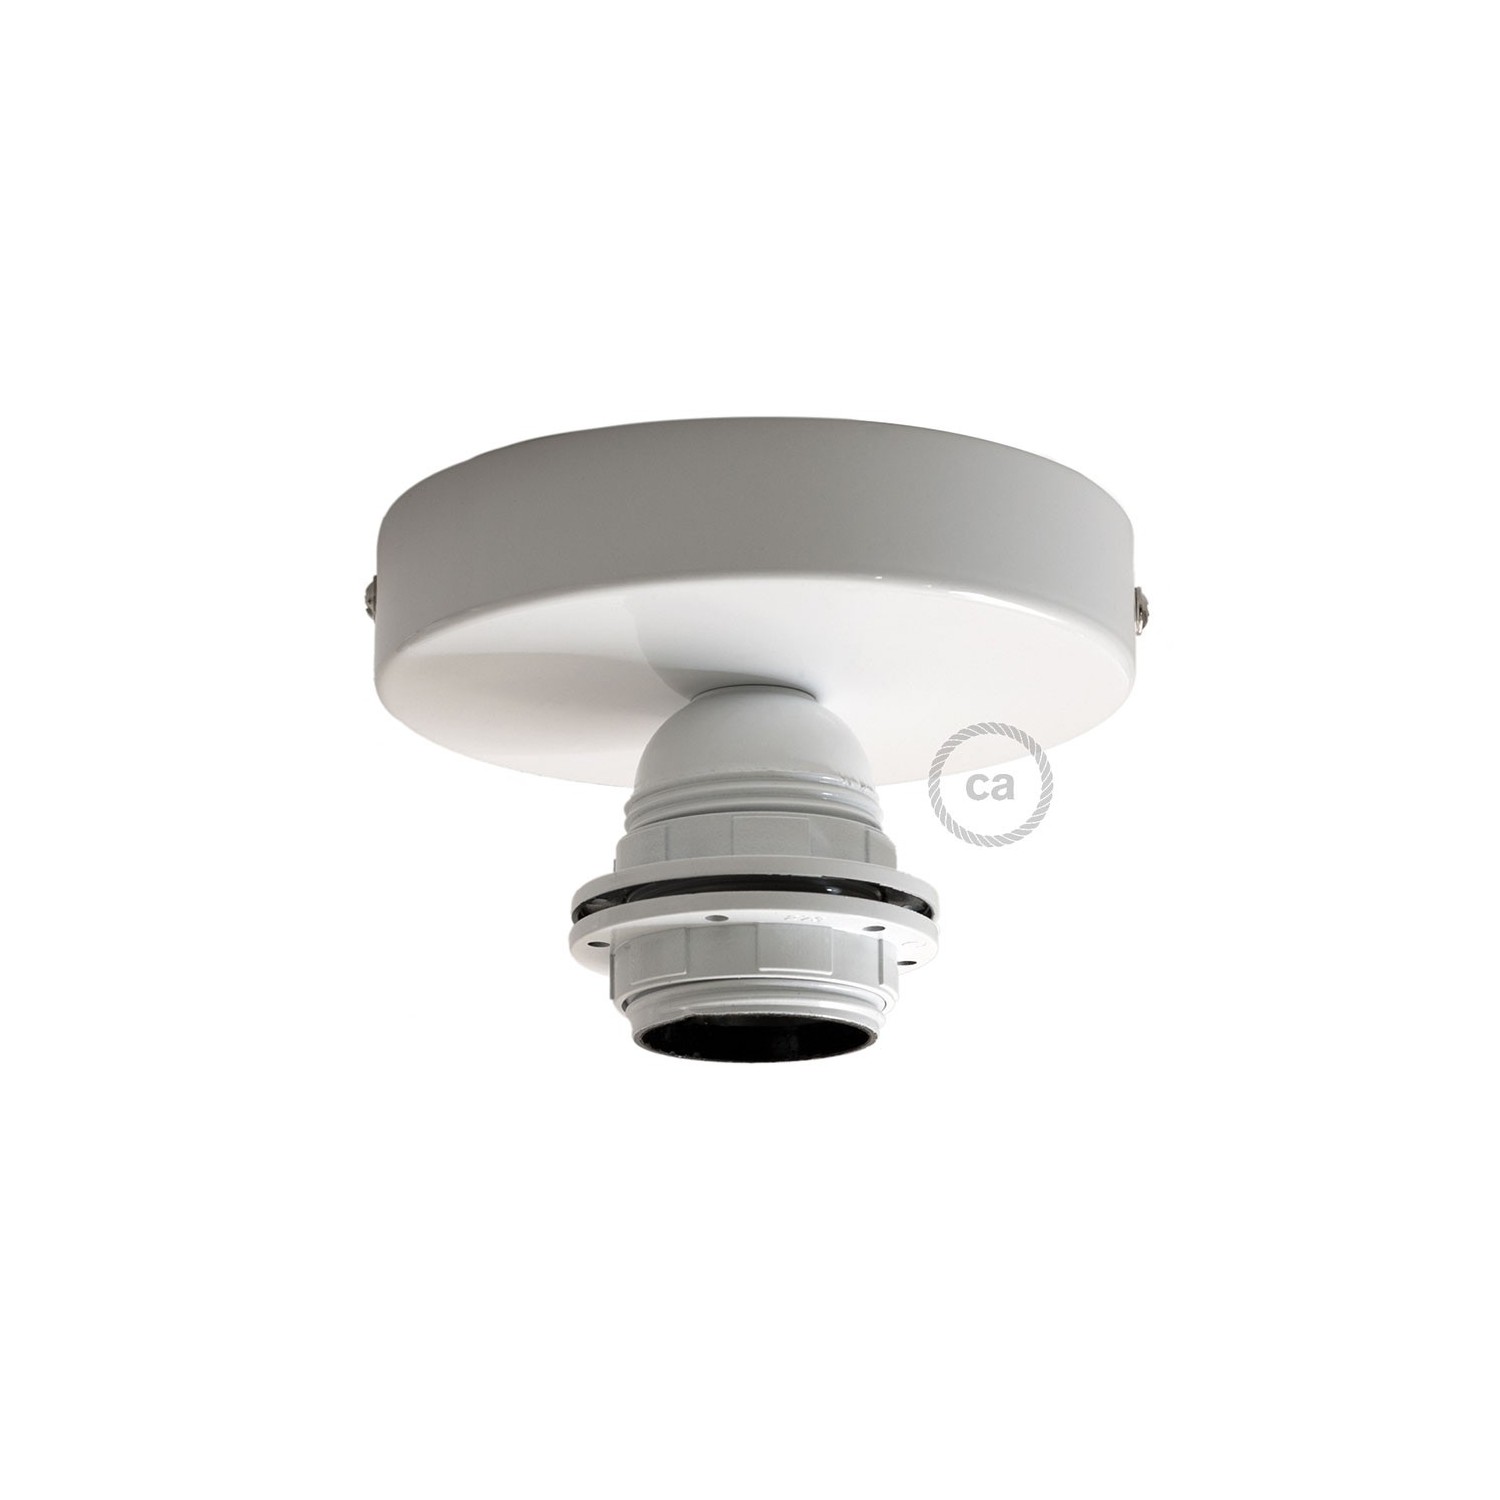 Fermaluce Monochrome s držačem žarulje navoja E27, metalna zidna ili stropna lampa